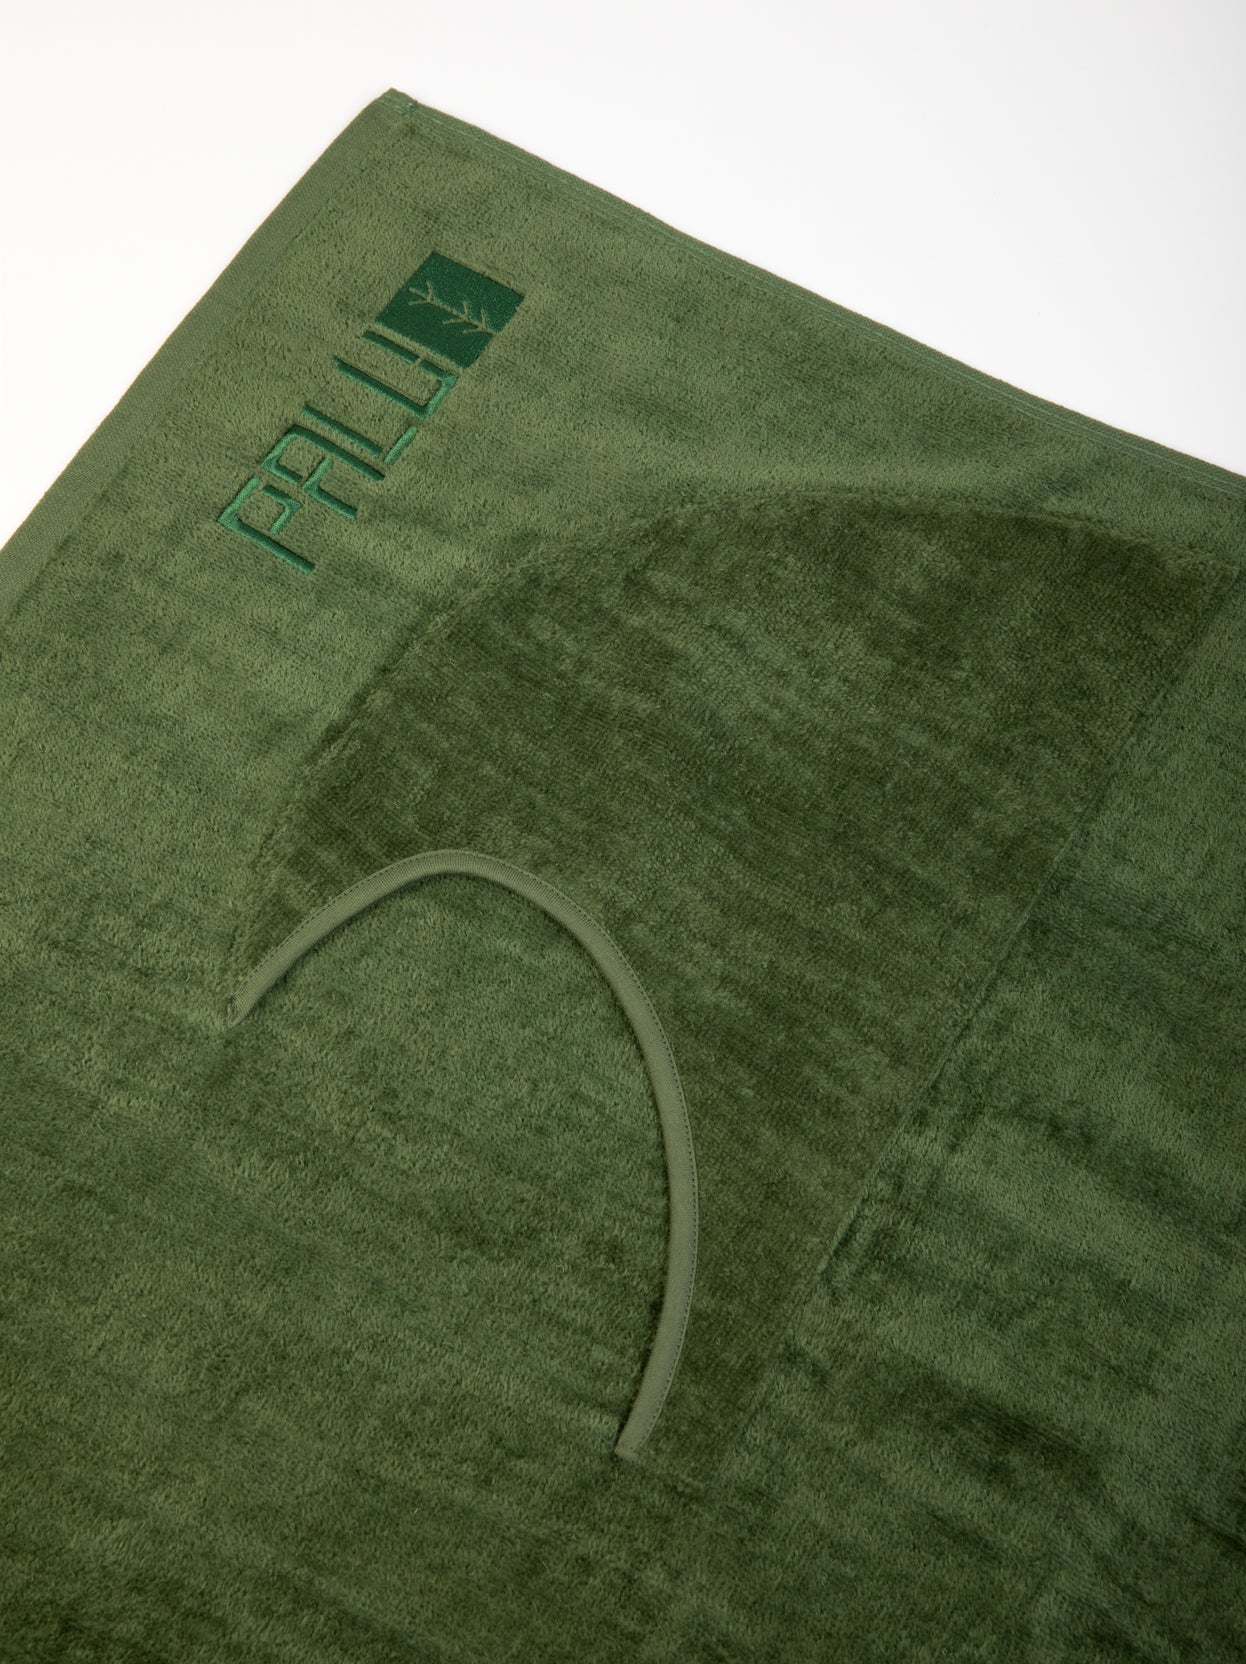 green wave towel pocket